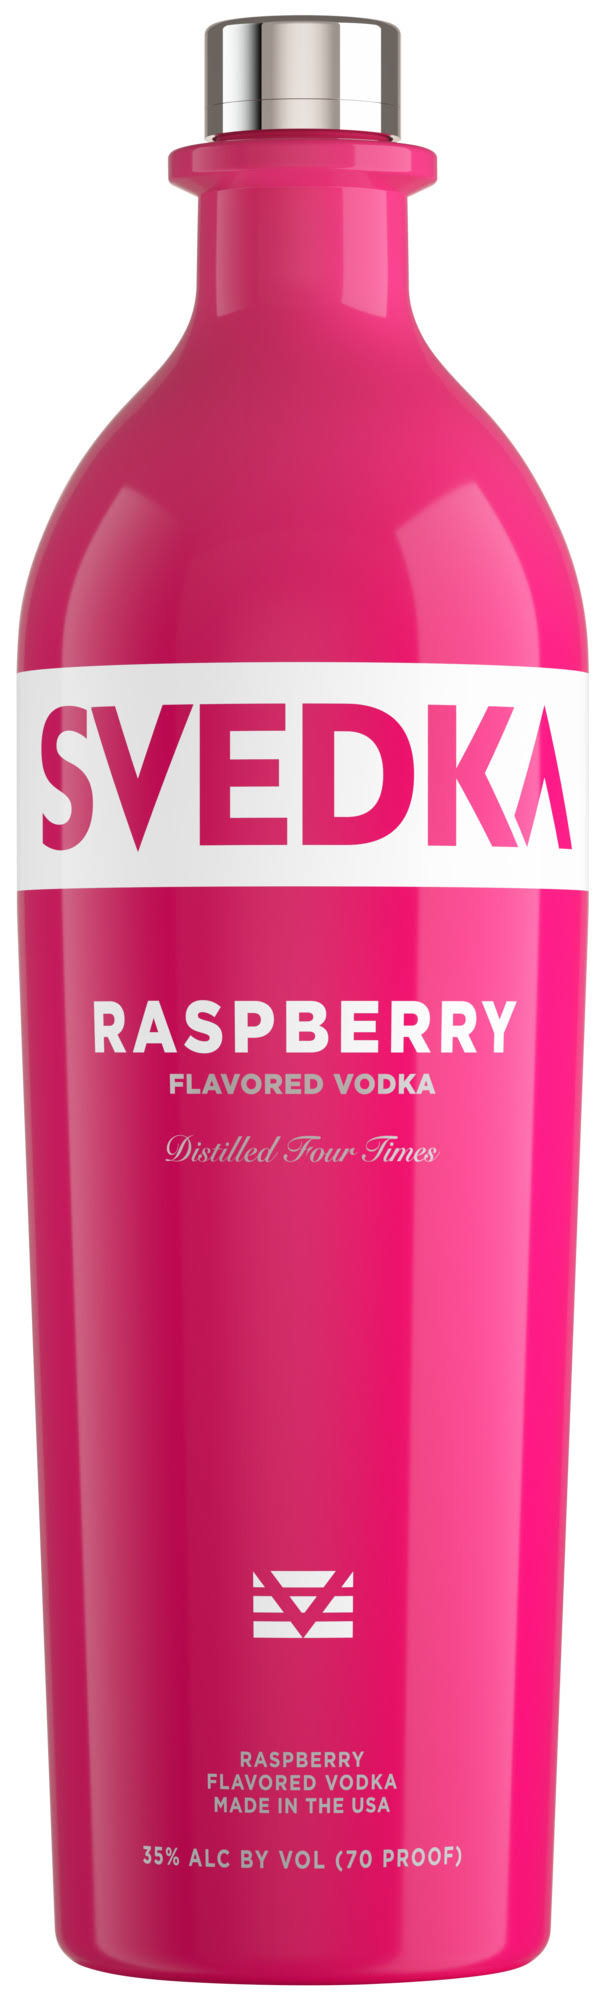 Svedka Vodka - Raspberry, 1L